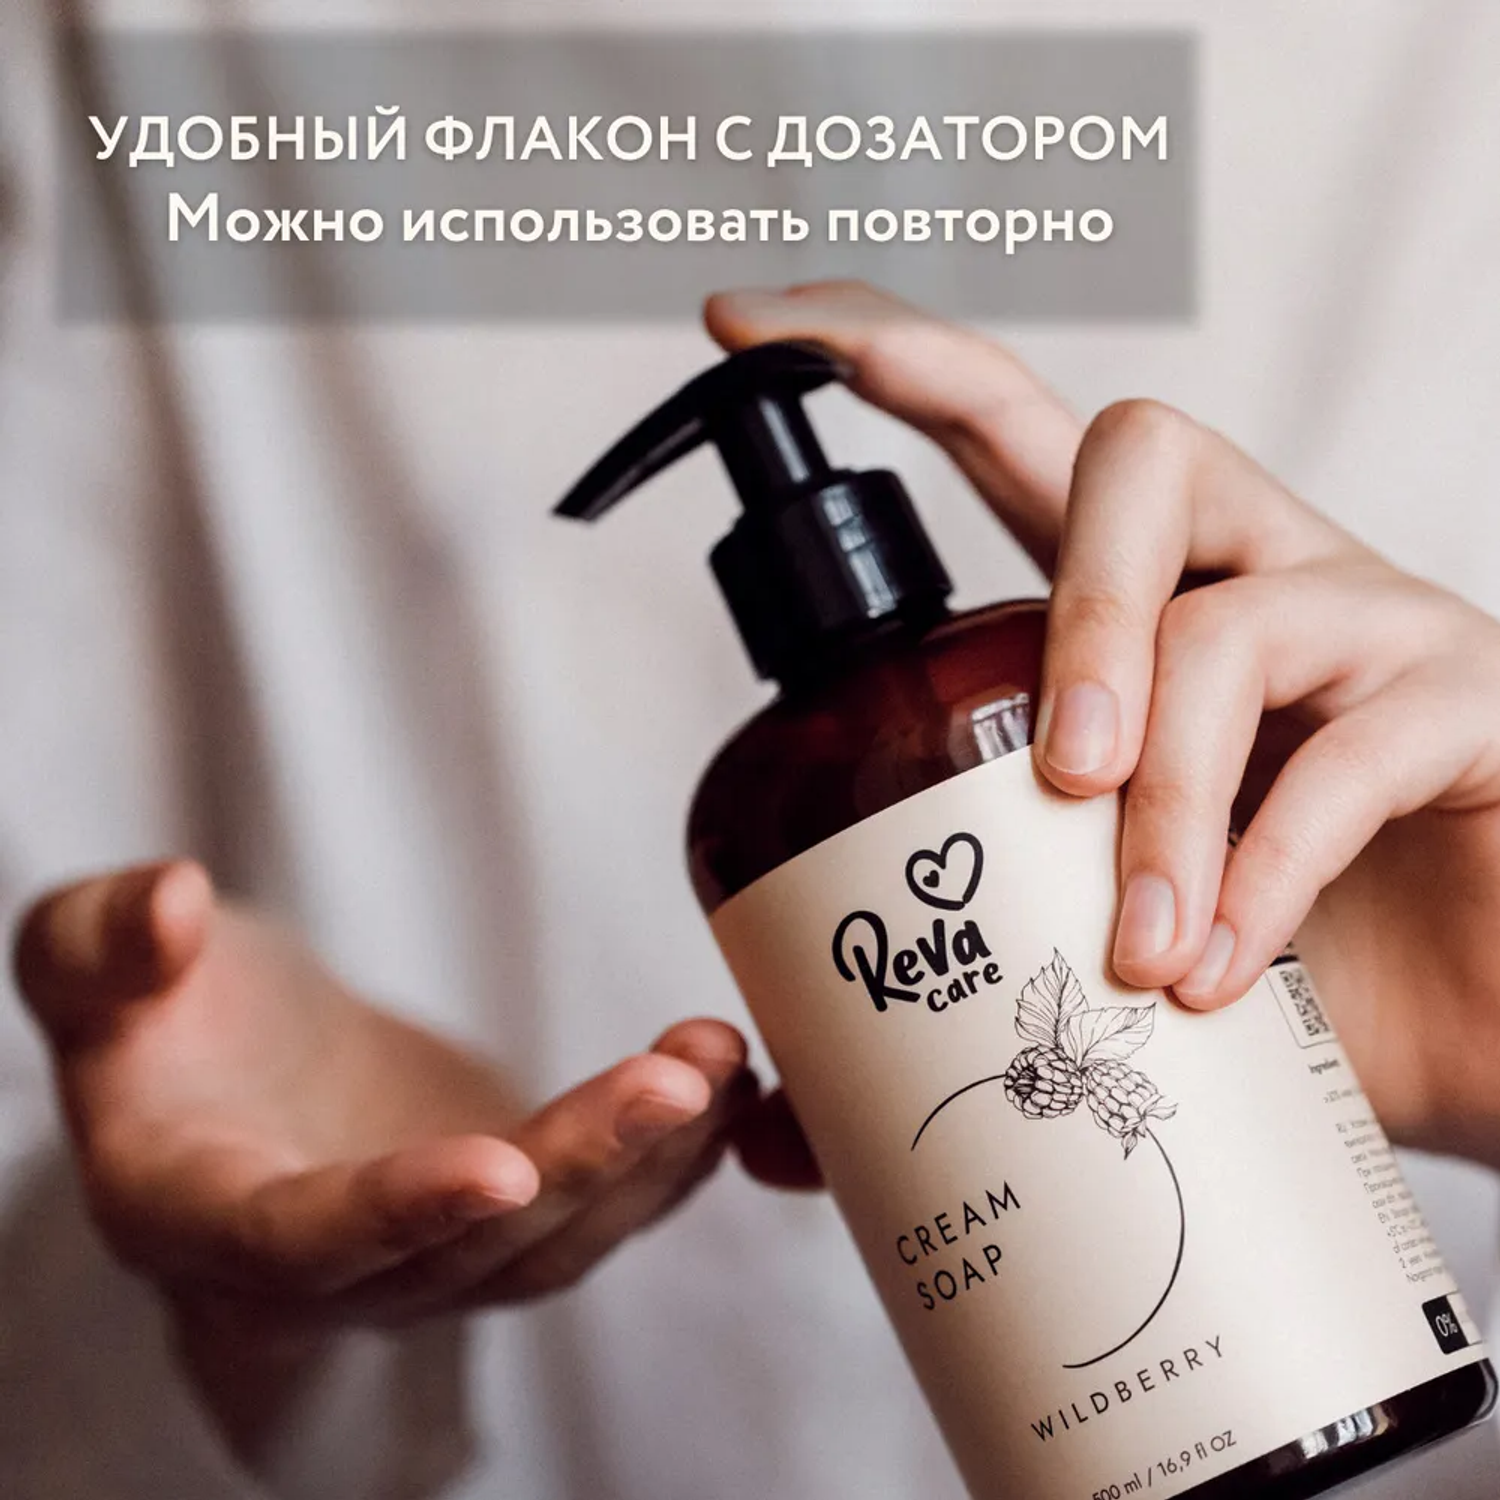 Жидкое мыло Reva Care для рук Cream Soap гипоаллергенное густое мягкое с ароматом ежевики 500 мл - фото 3